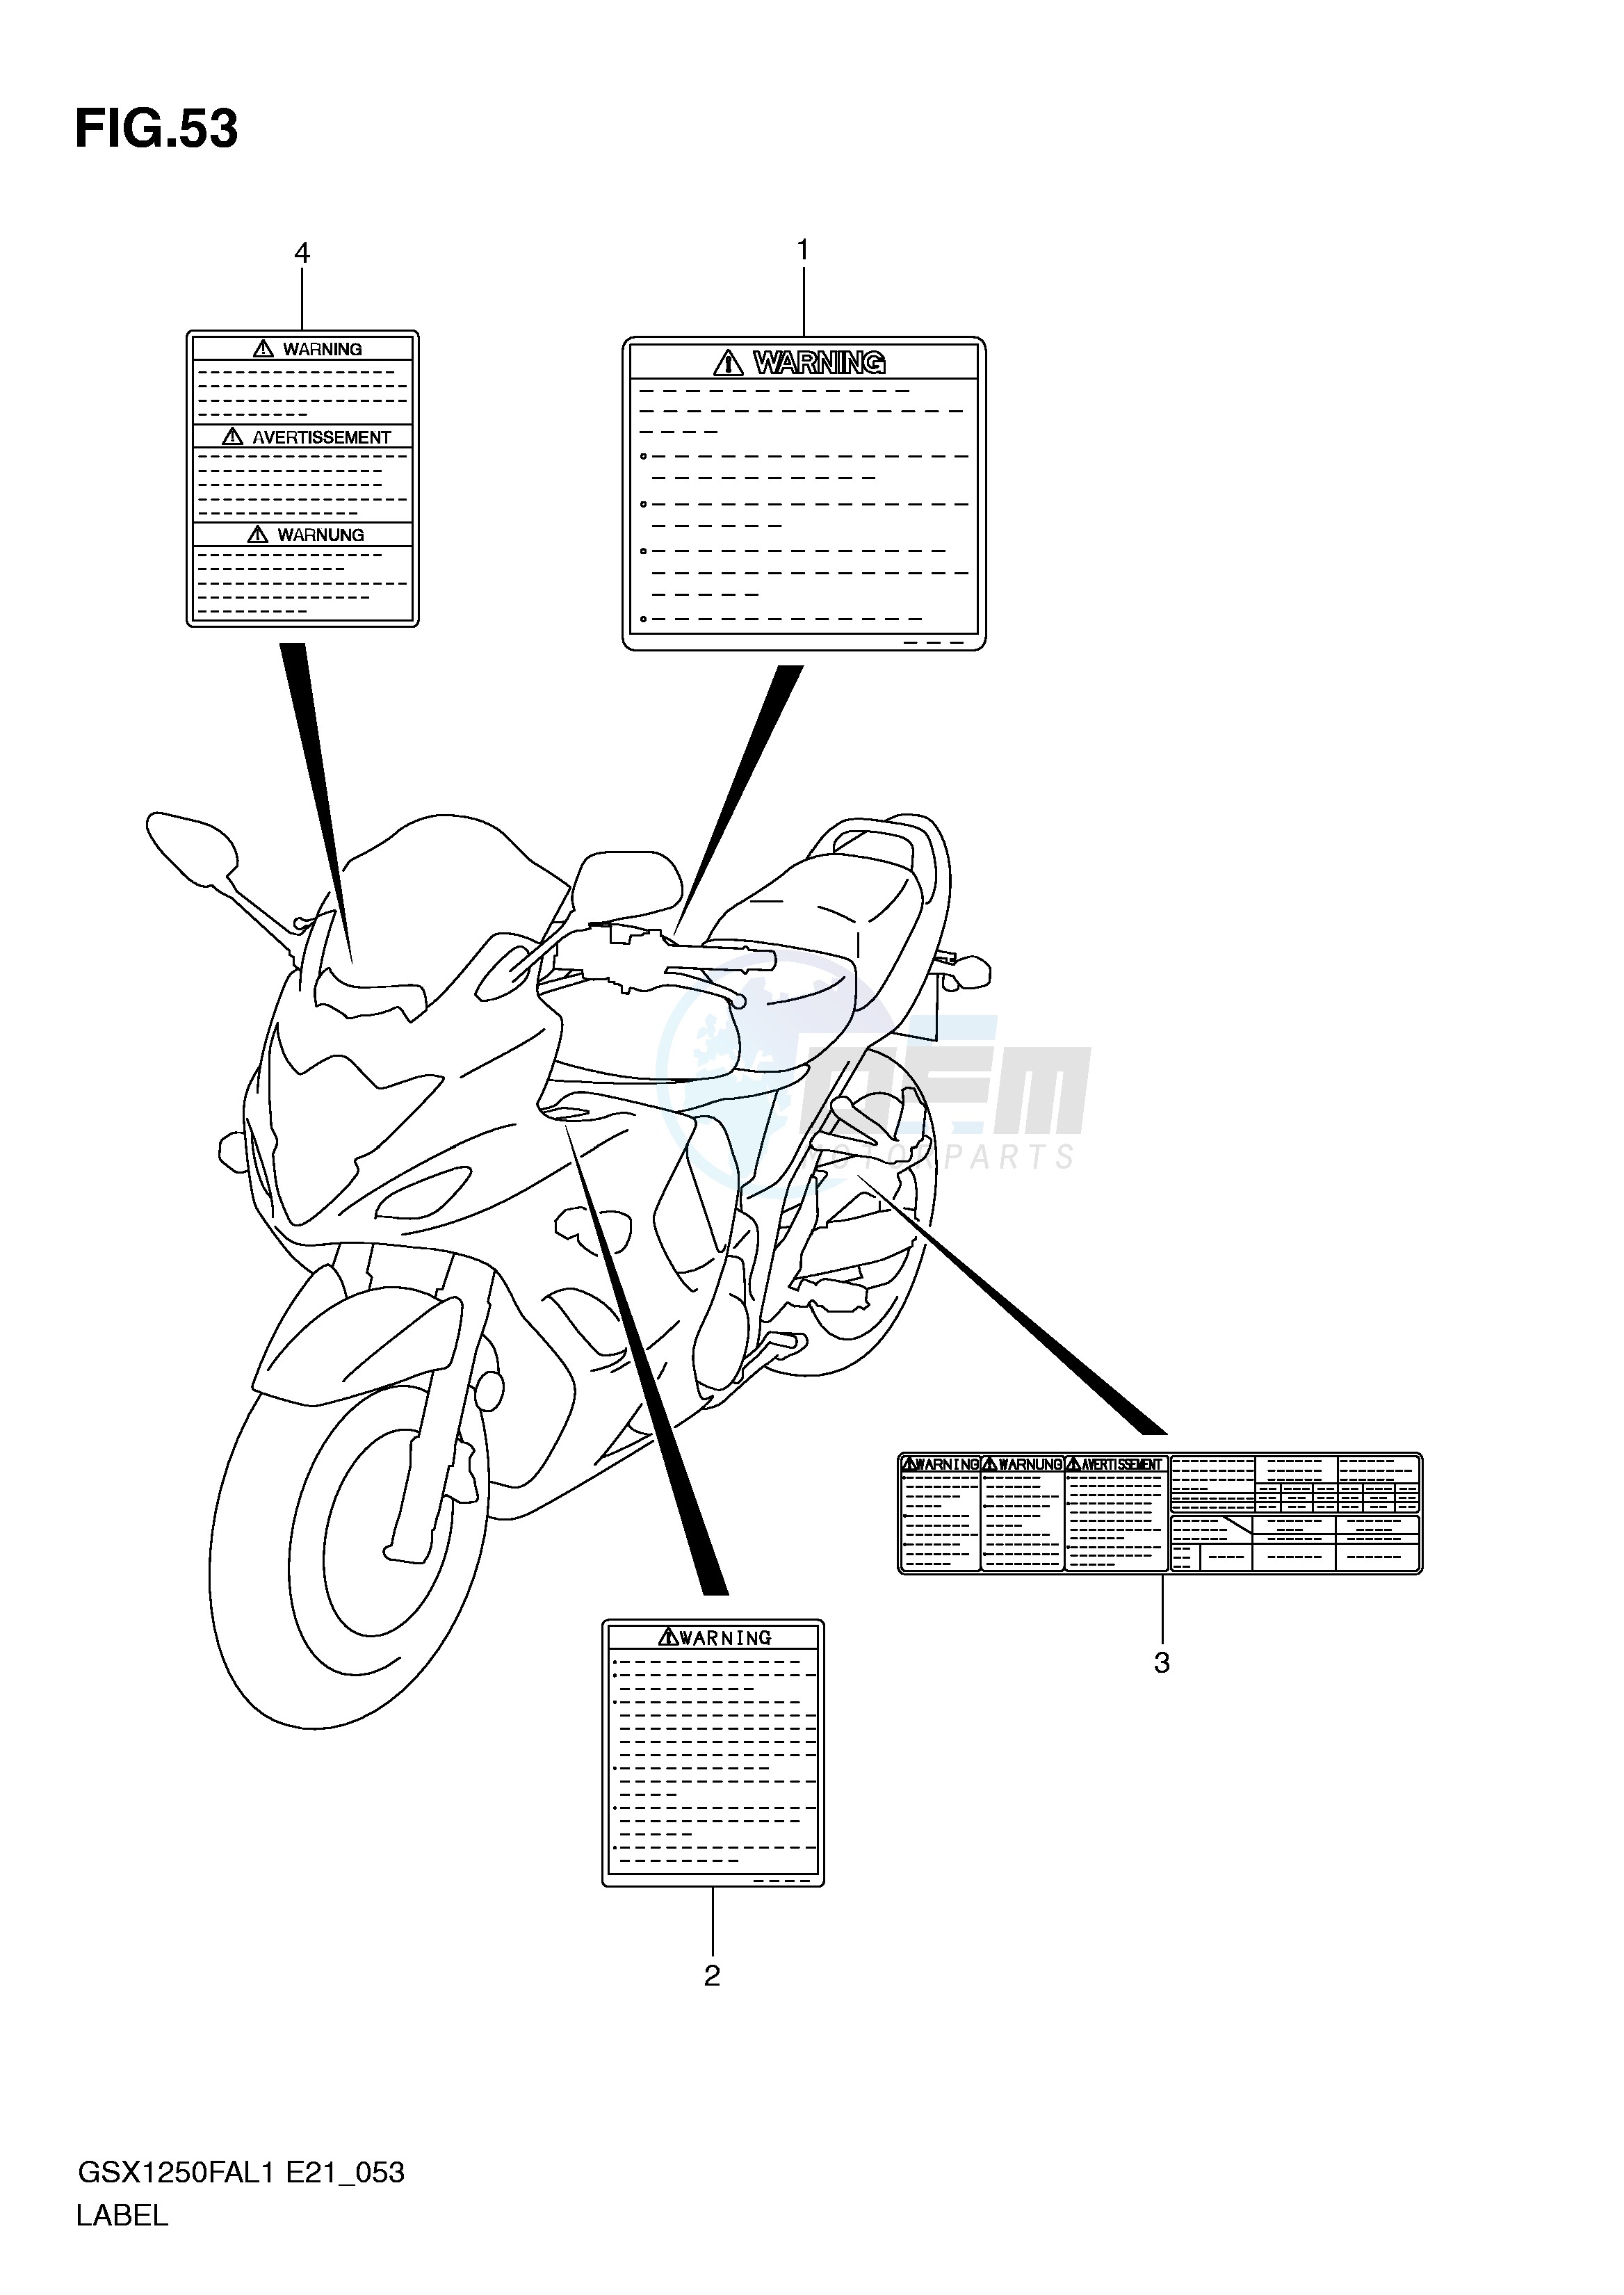 LABEL (GSX1250FAL1 E24) blueprint